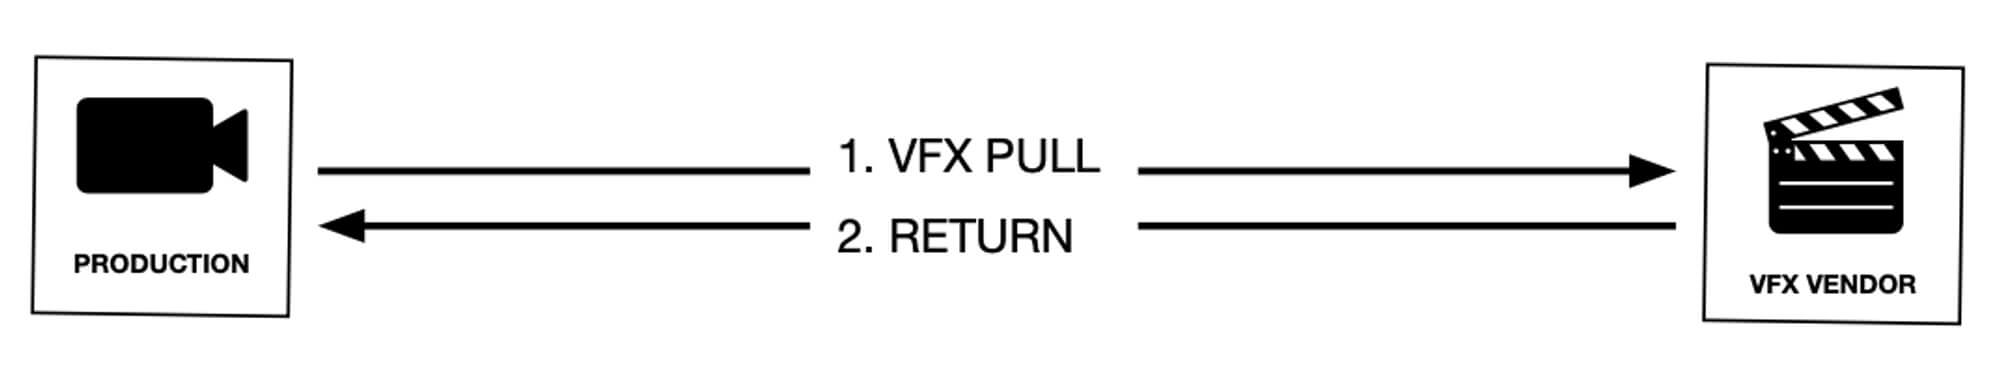 Der VFX-Roundtrip-Workflow wird erklärt